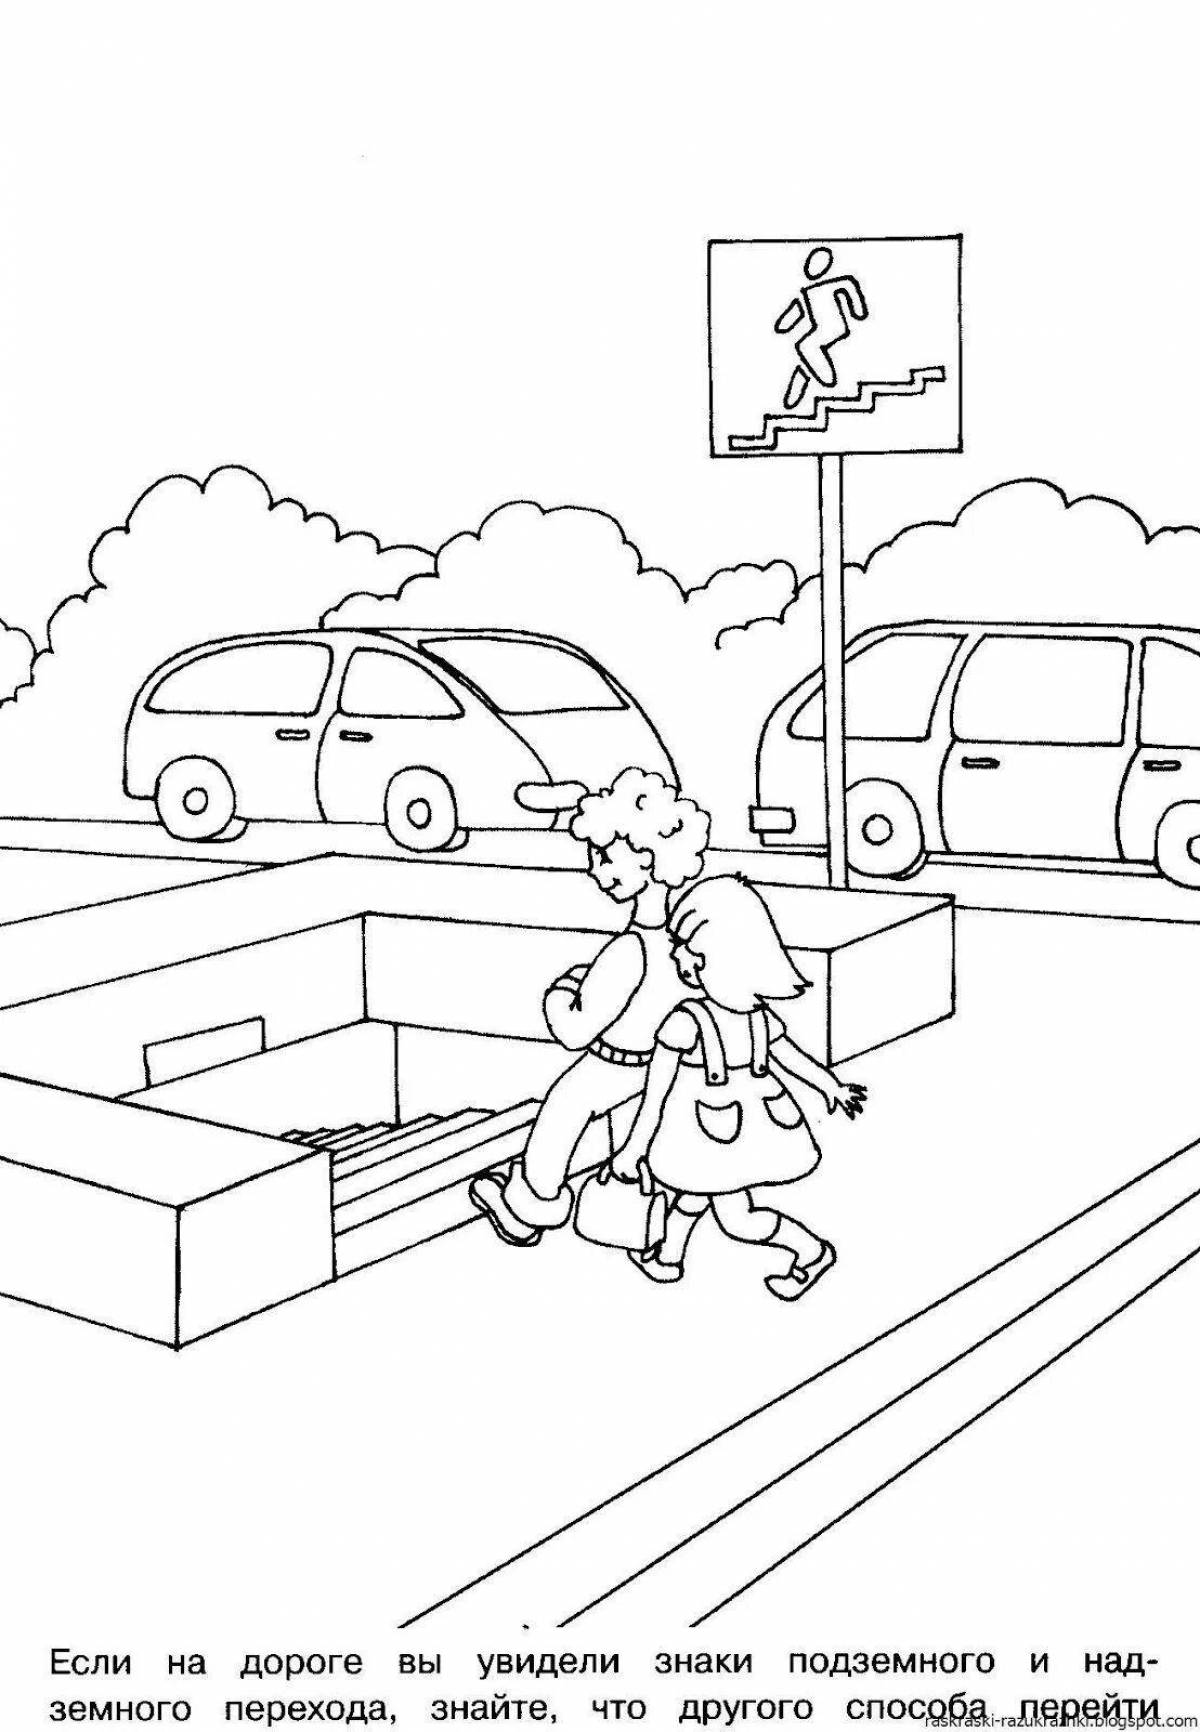 Интерактивные правила дорожной раскраски для школьников